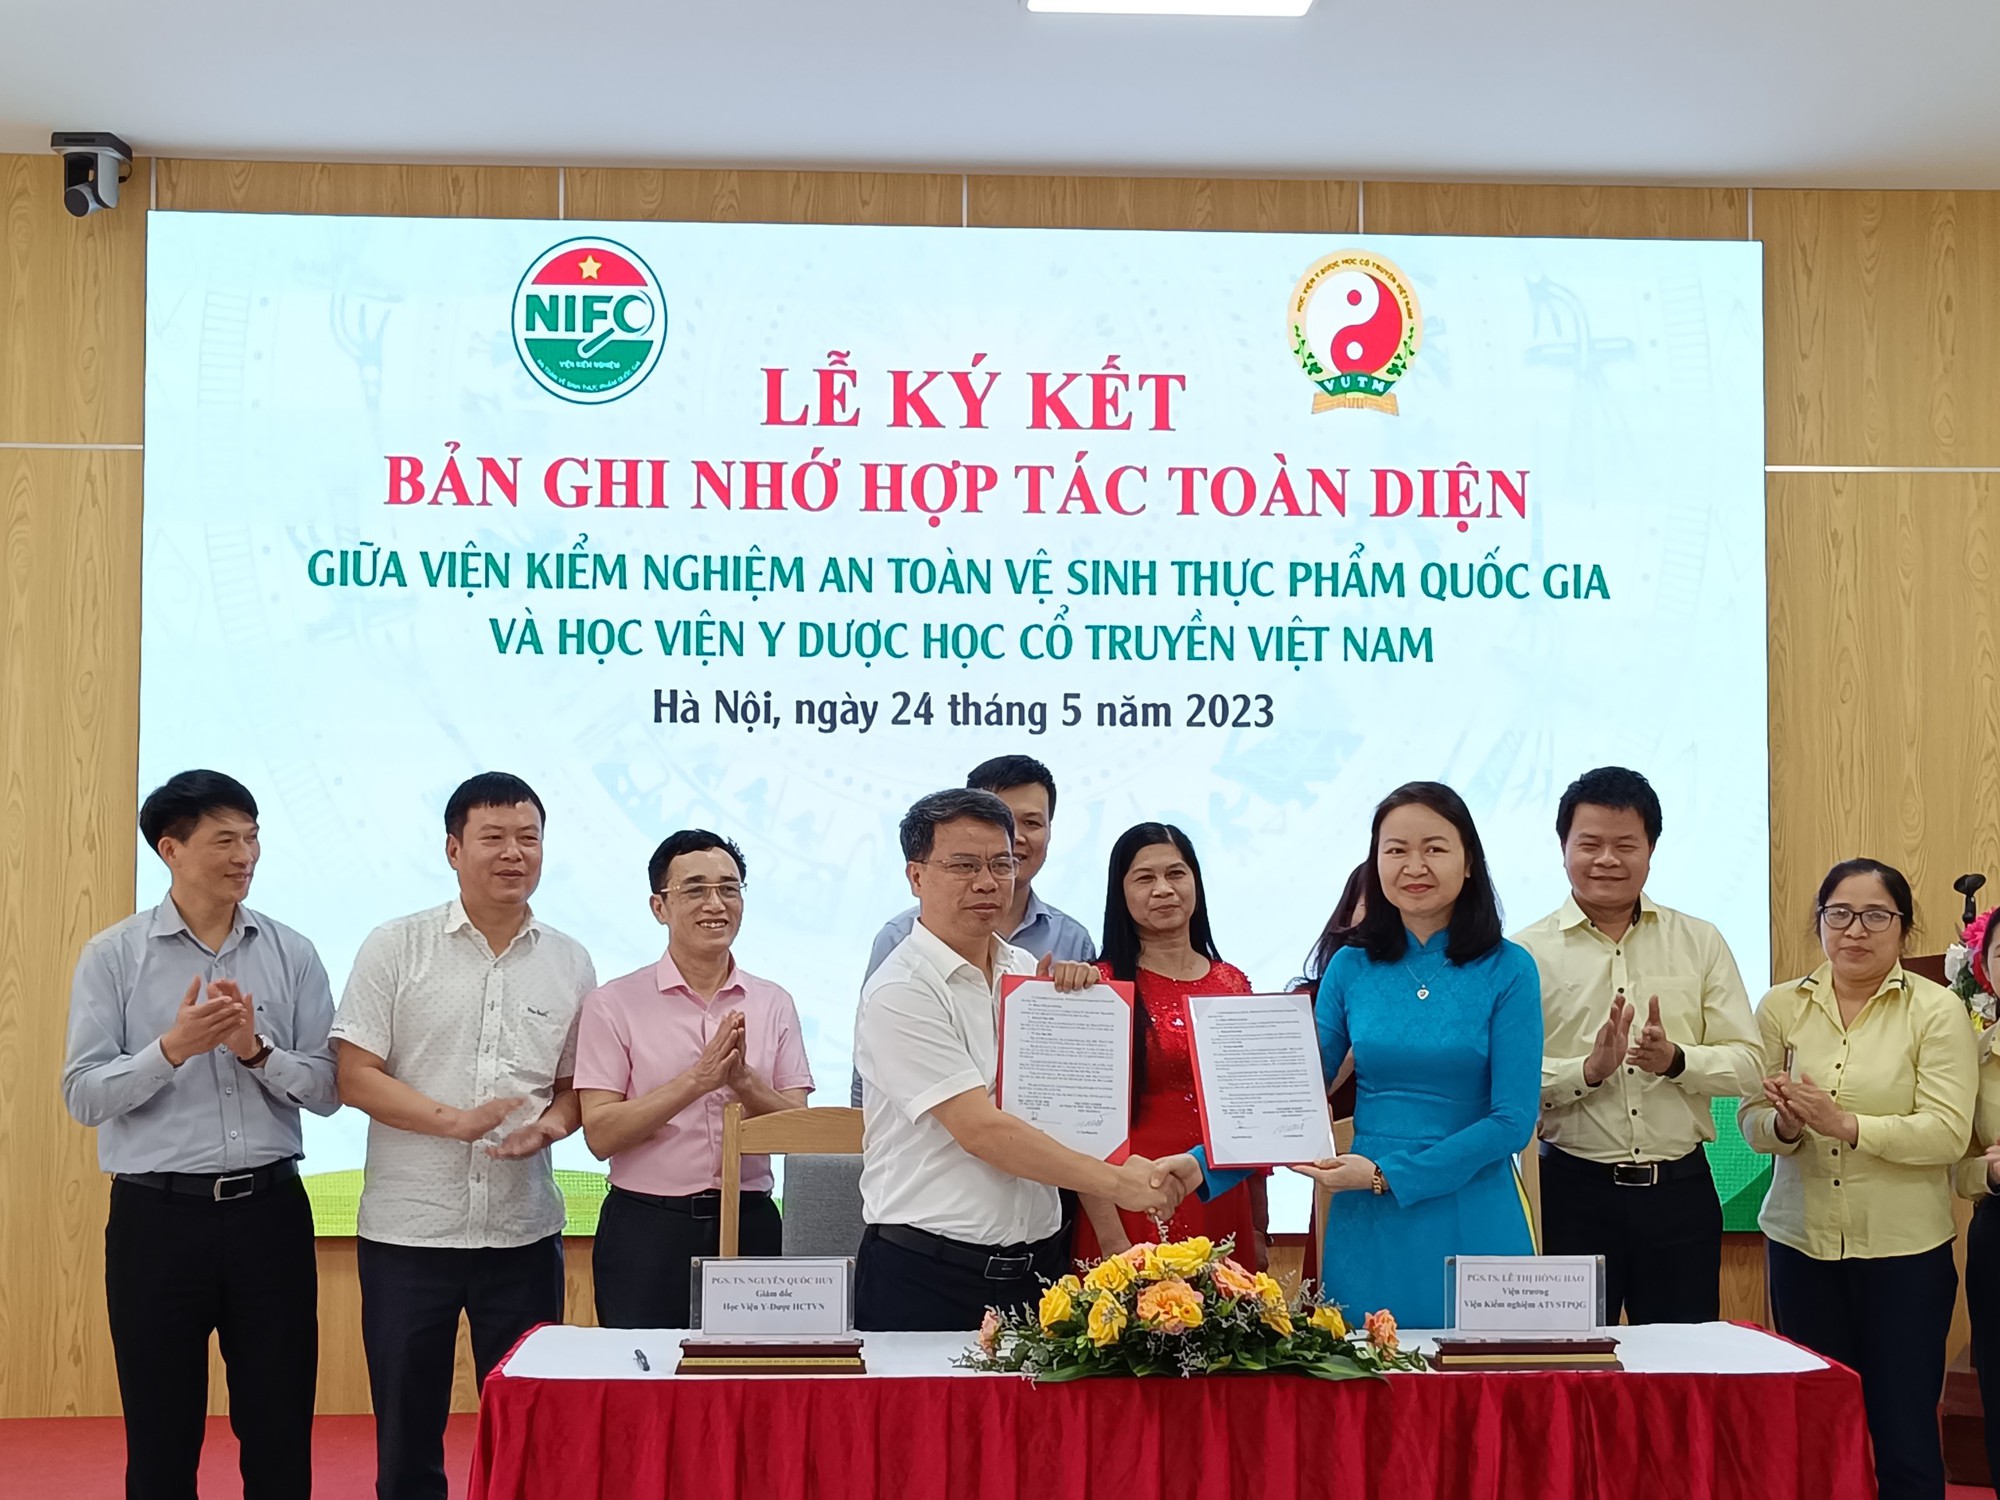 Viện Kiểm nghiệm an toàn vệ sinh thực phẩm Quốc gia và Học viện Y Dược học cổ truyền Việt Nam ký kết hợp tác